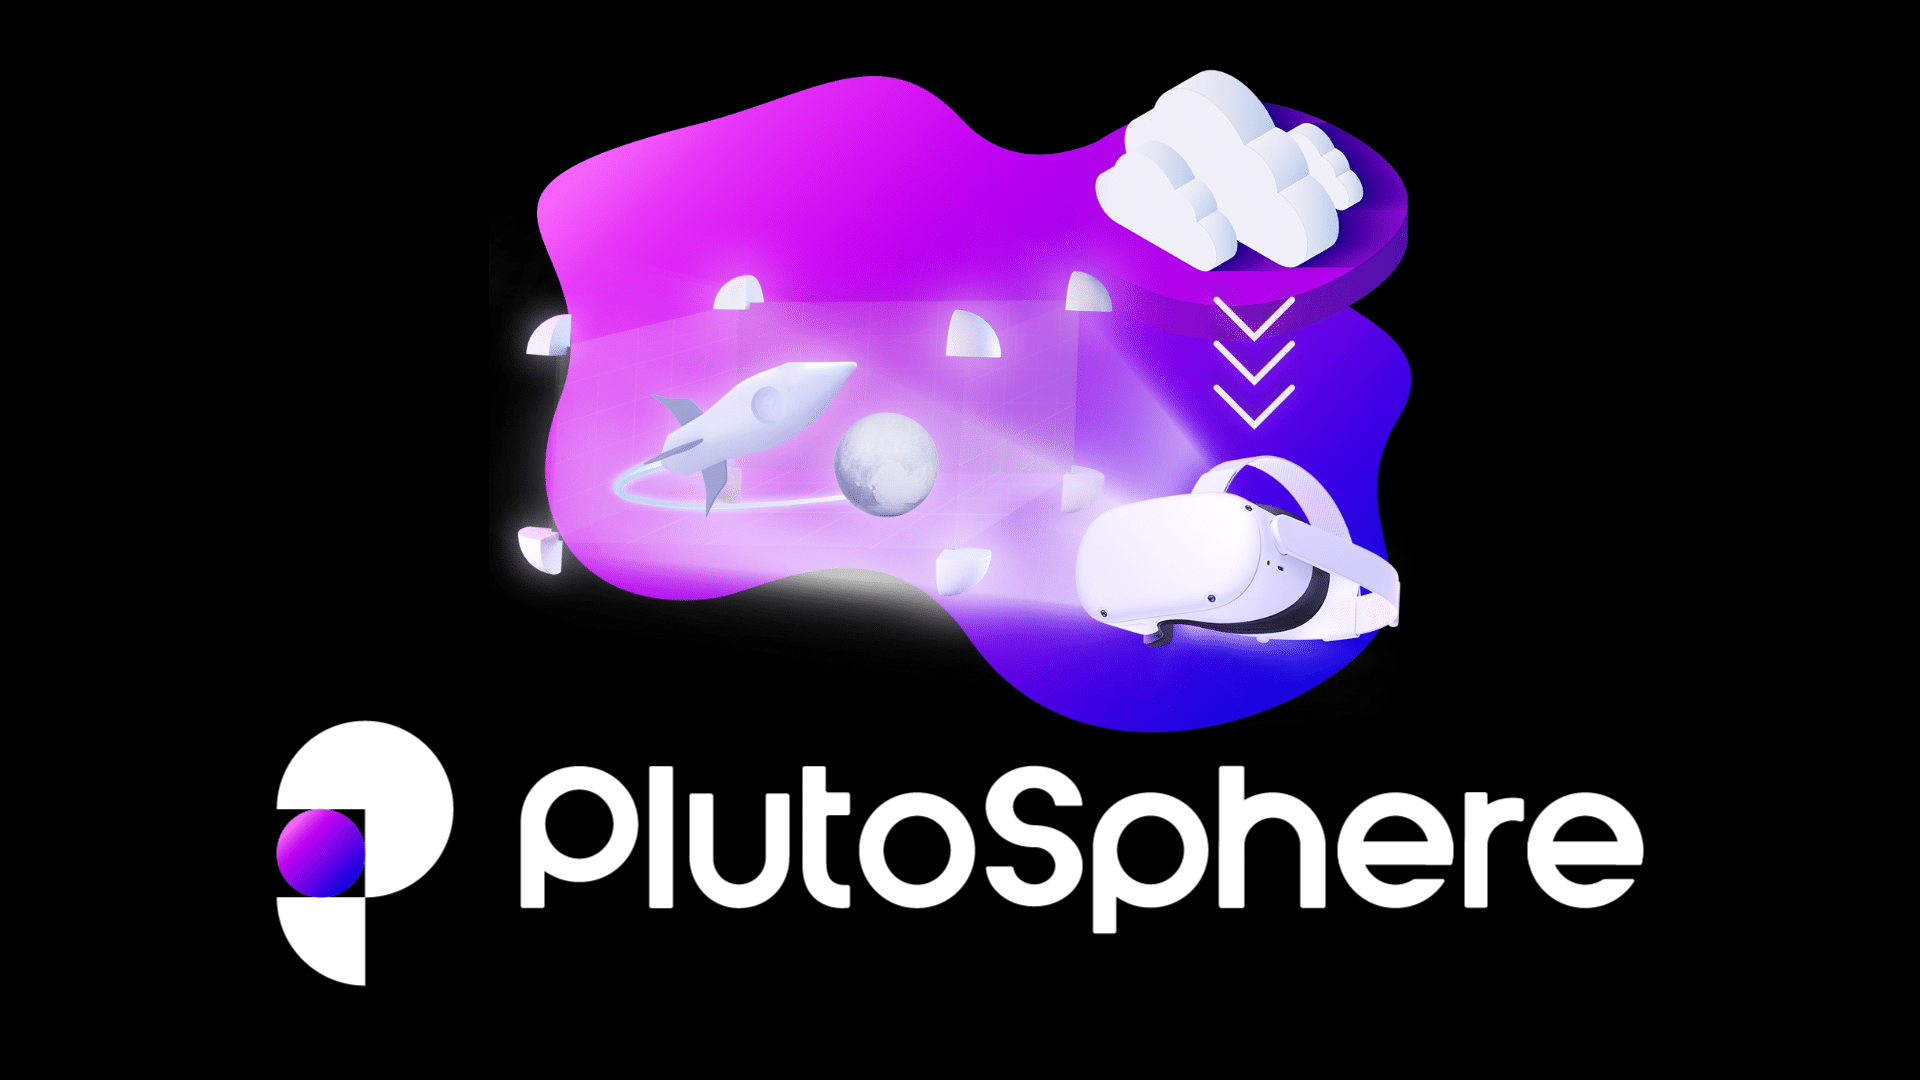 plutosphere ar vr